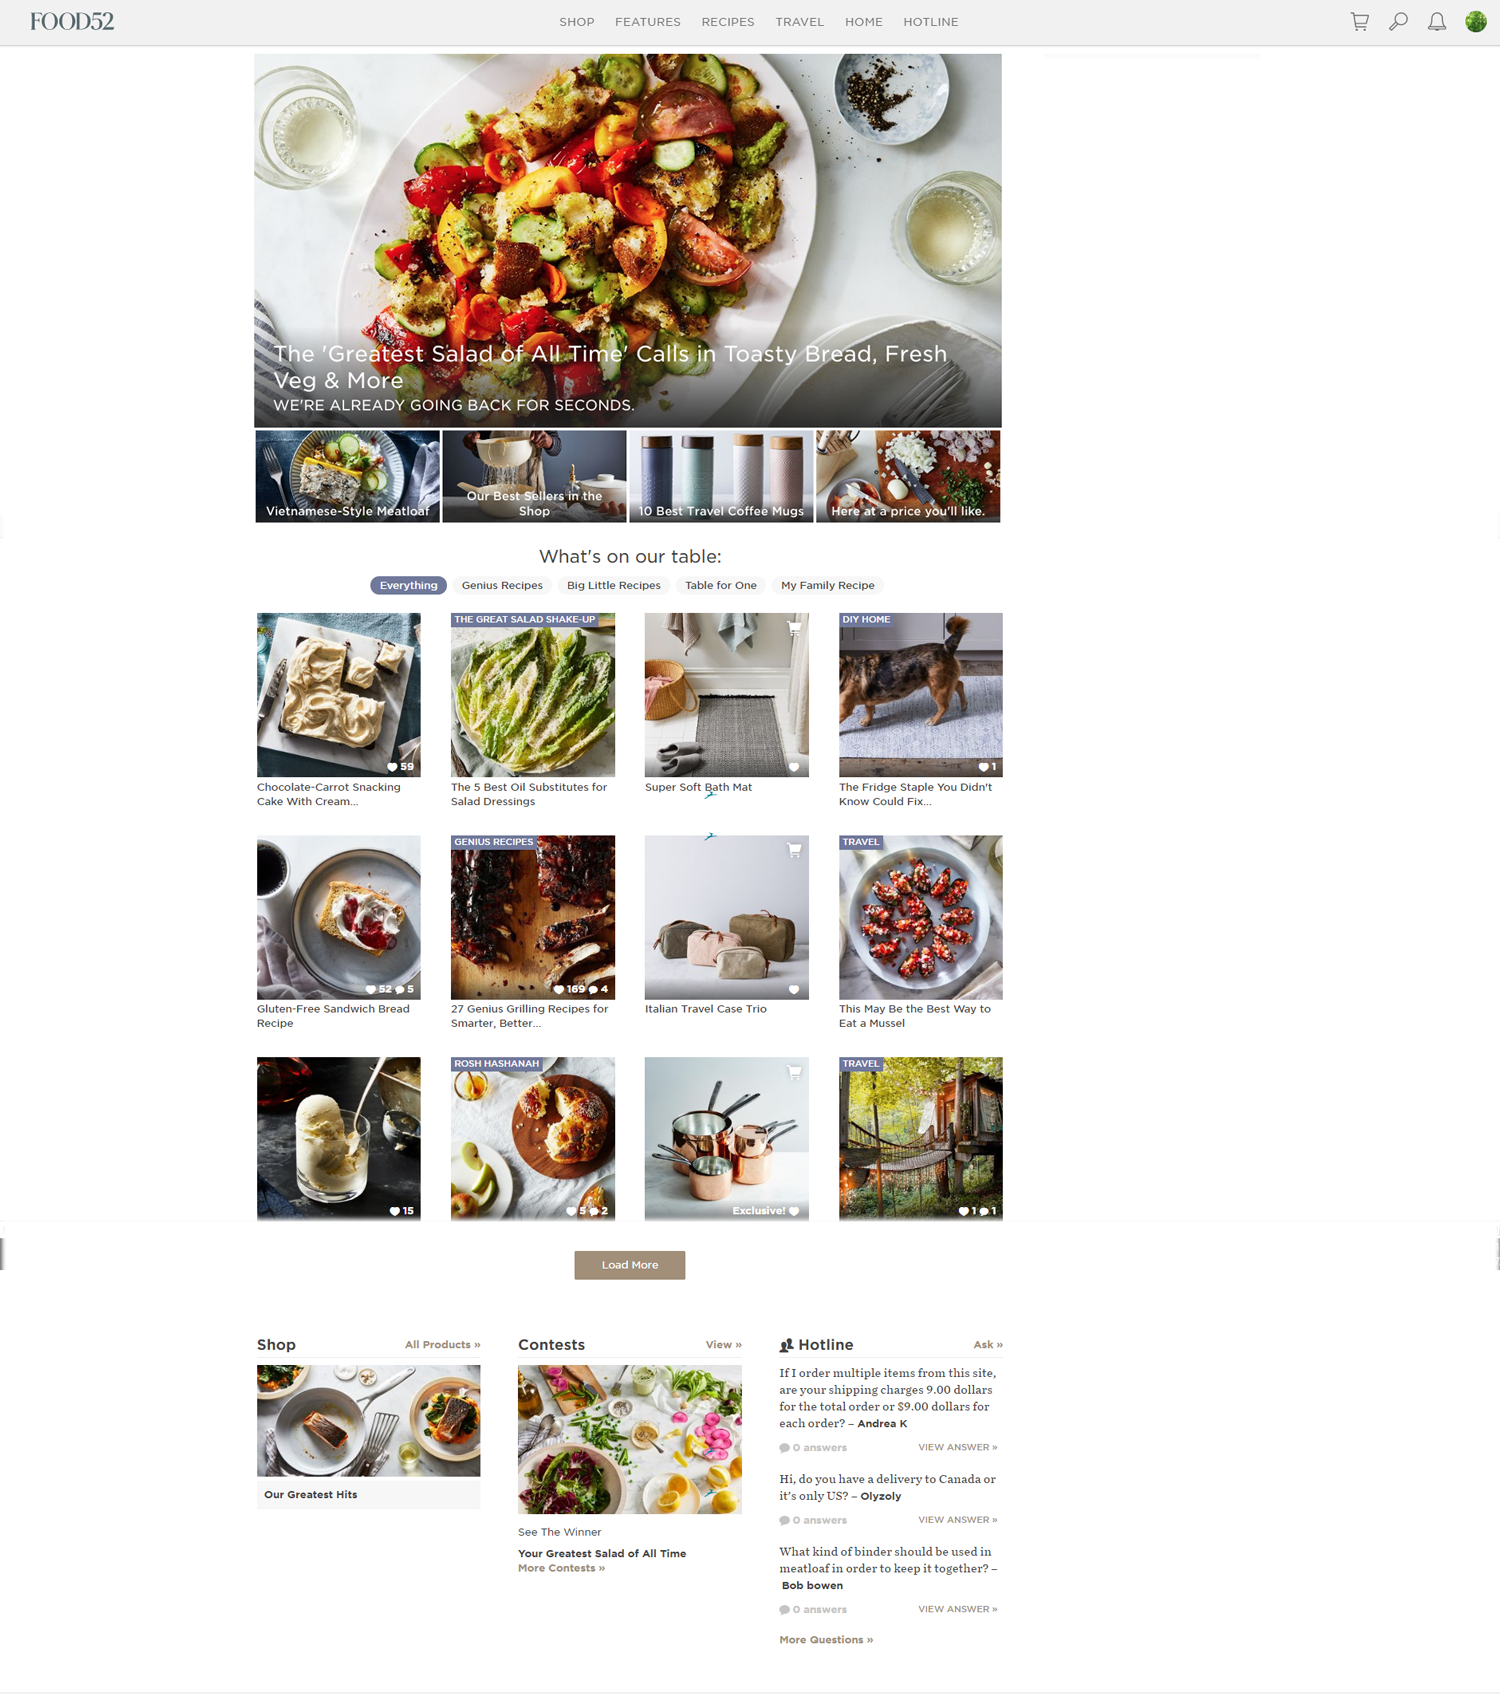 Food-52-Salad-Contest-Announcement-Home-Page-Desktop.png